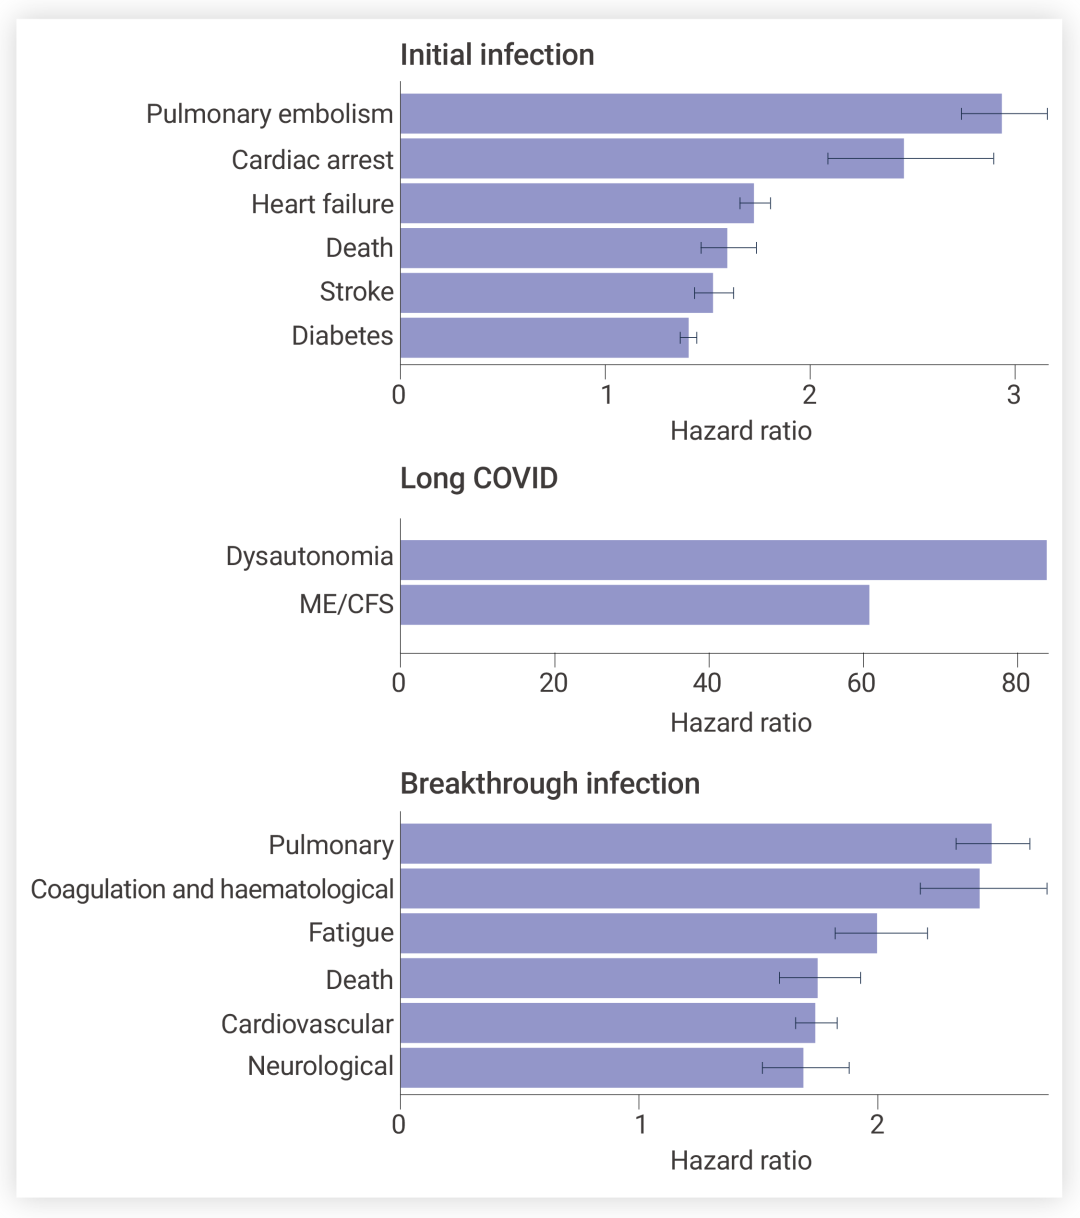 图 3. SARS-CoV-2 感染、长新冠以及突破性感染患者罹患各种疾病的风险增加[3]。